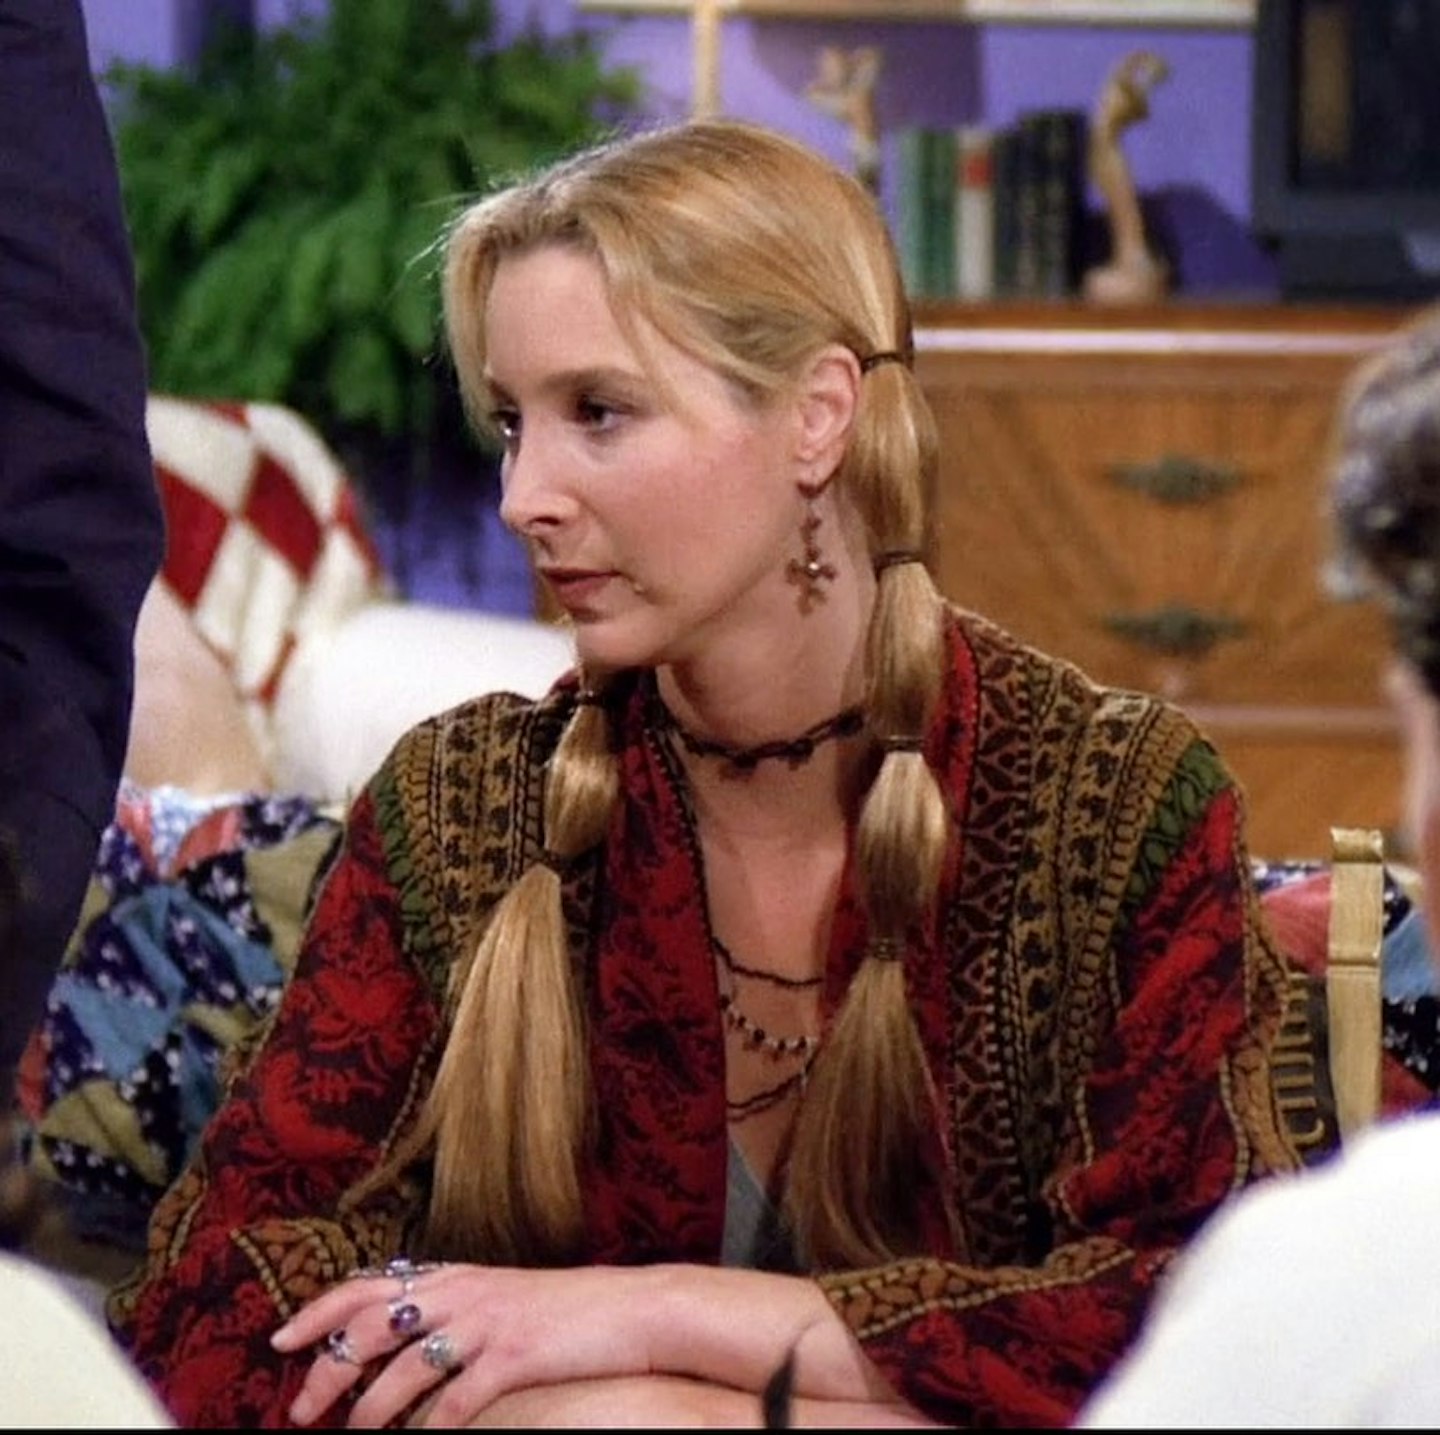 iconic Phoebe buffay hairstyles - bubble braids